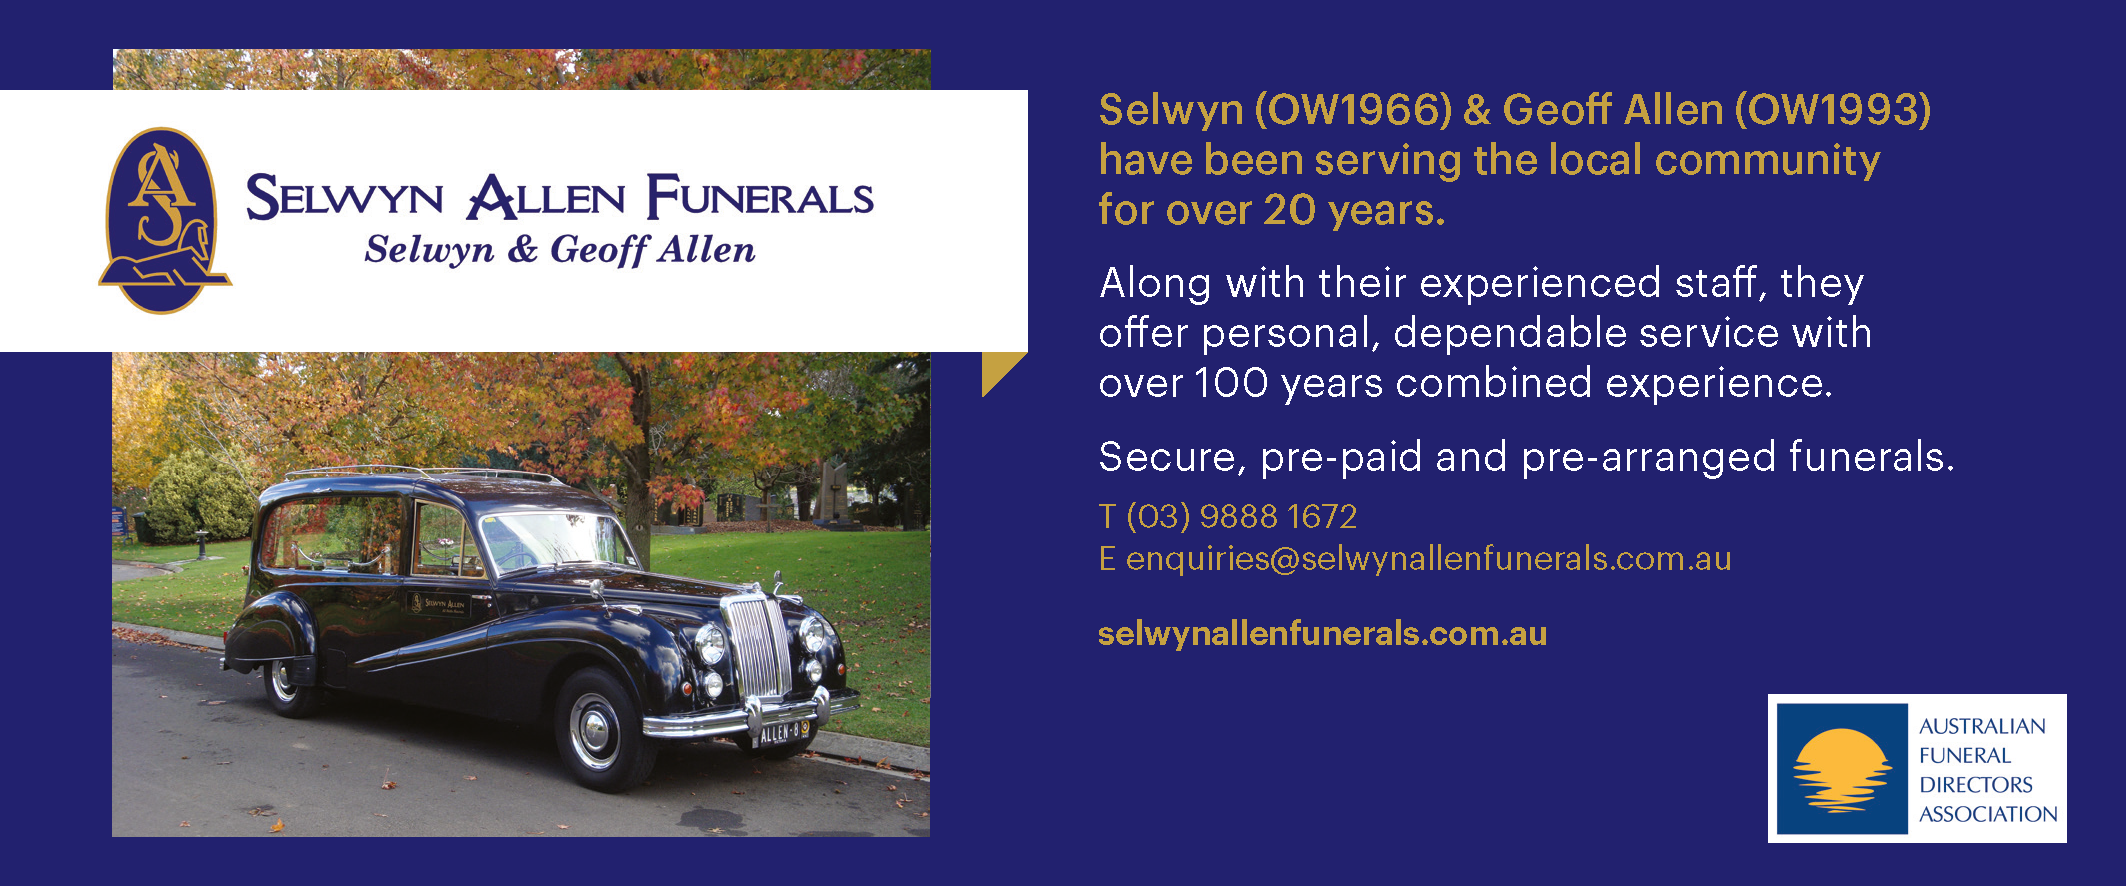 Selwyn Allen Funerals ad